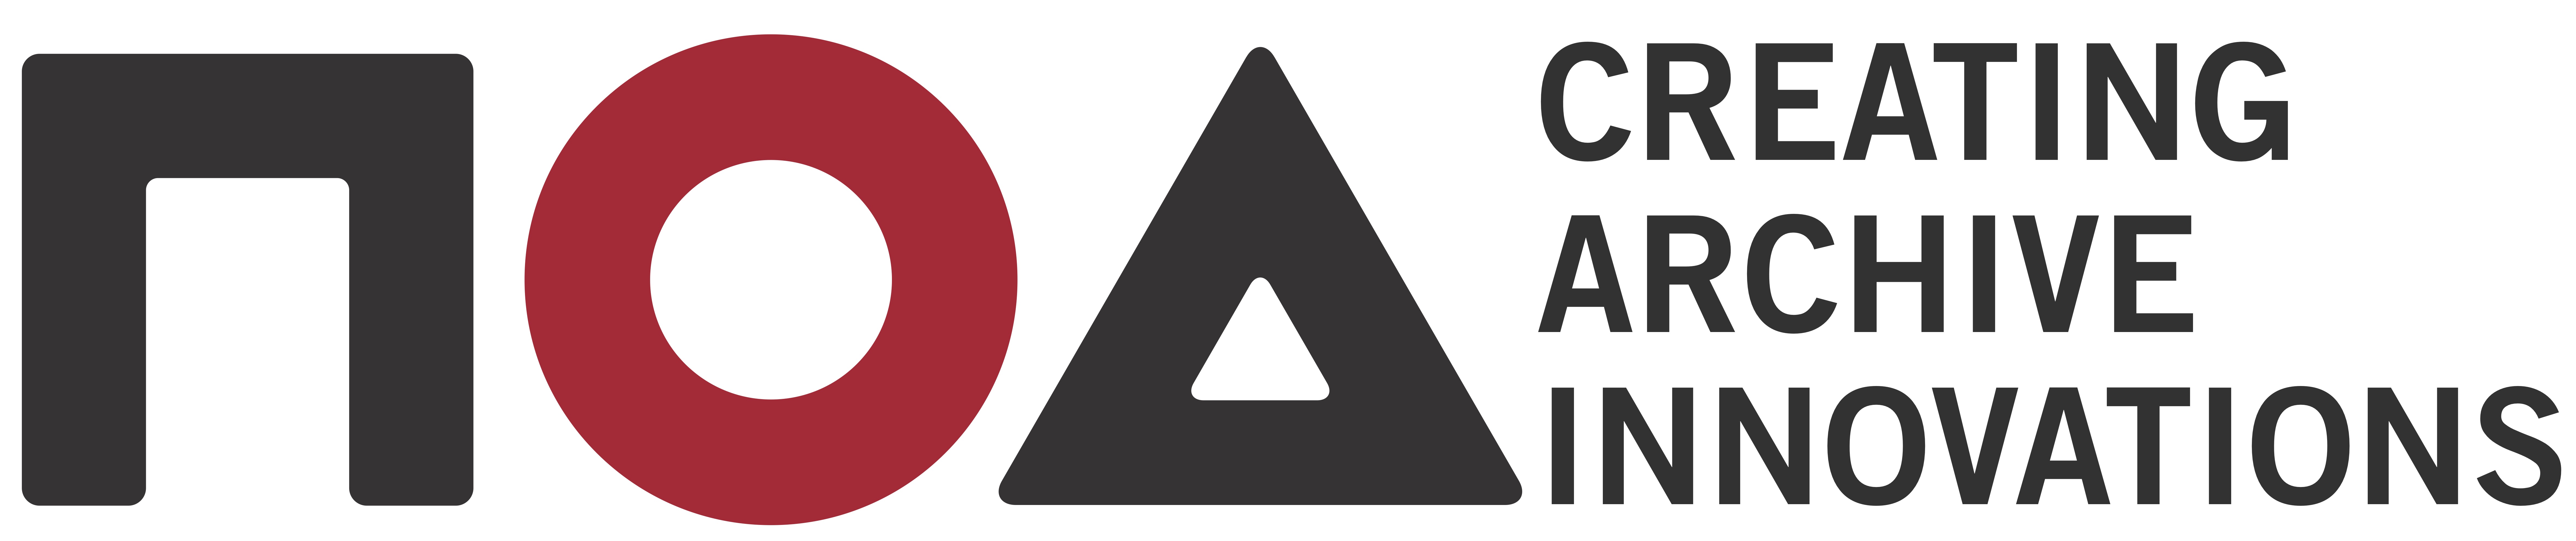 NOA GmbH logo